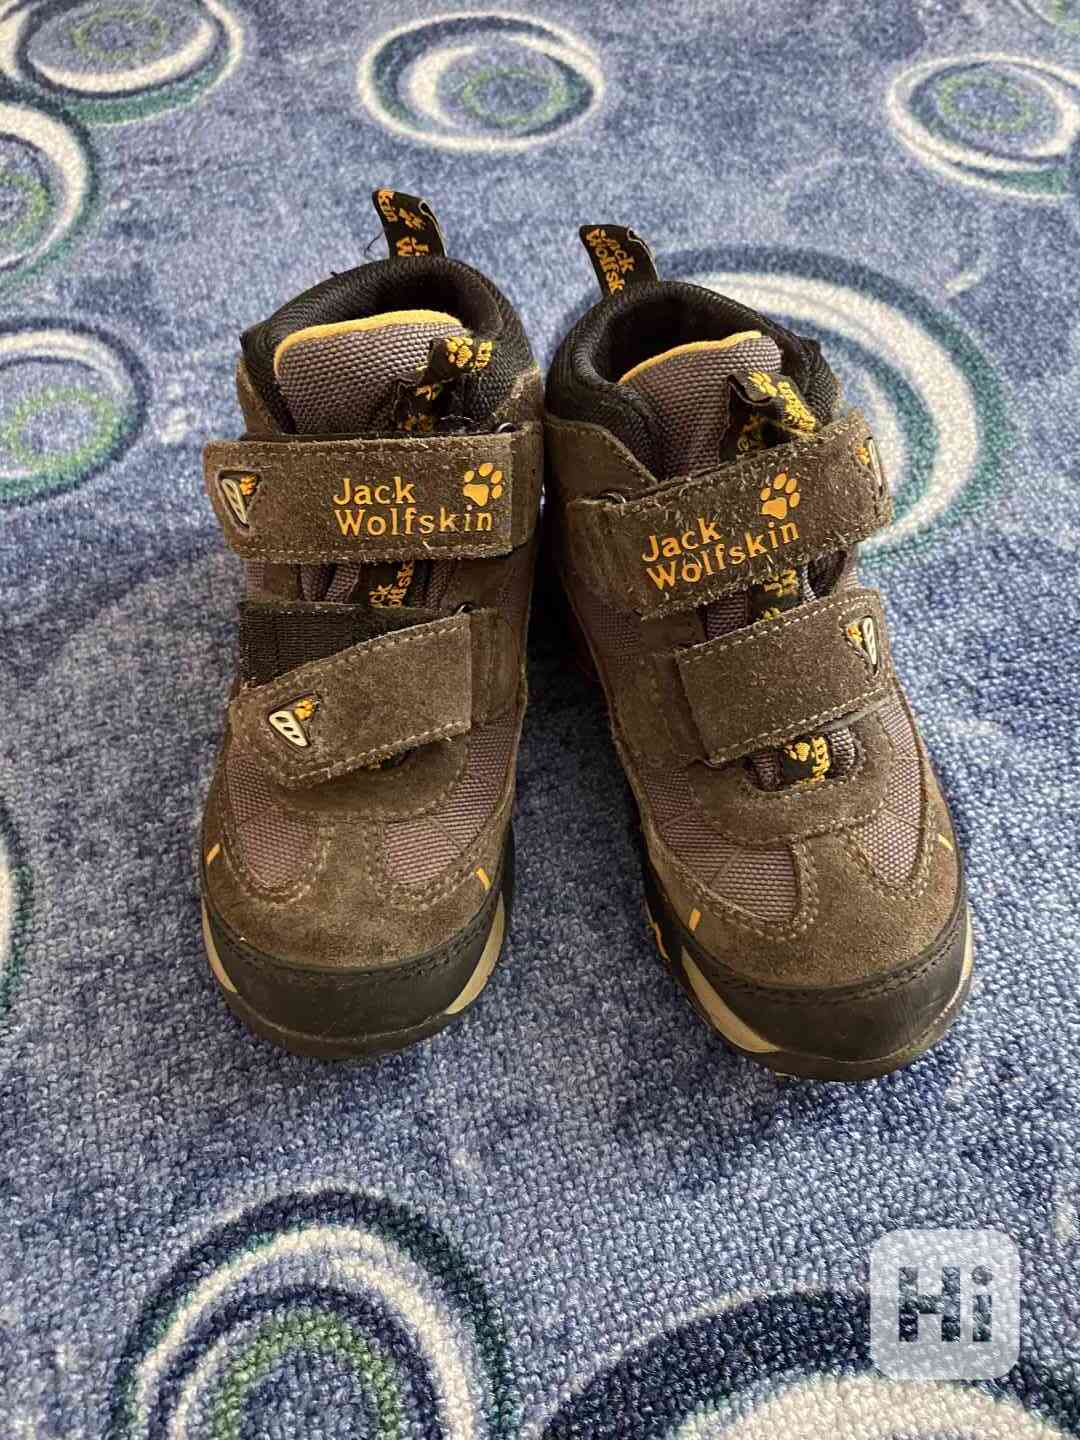 Dětské boty Jack Wolfskin (goretex) - vel. 27 - foto 1